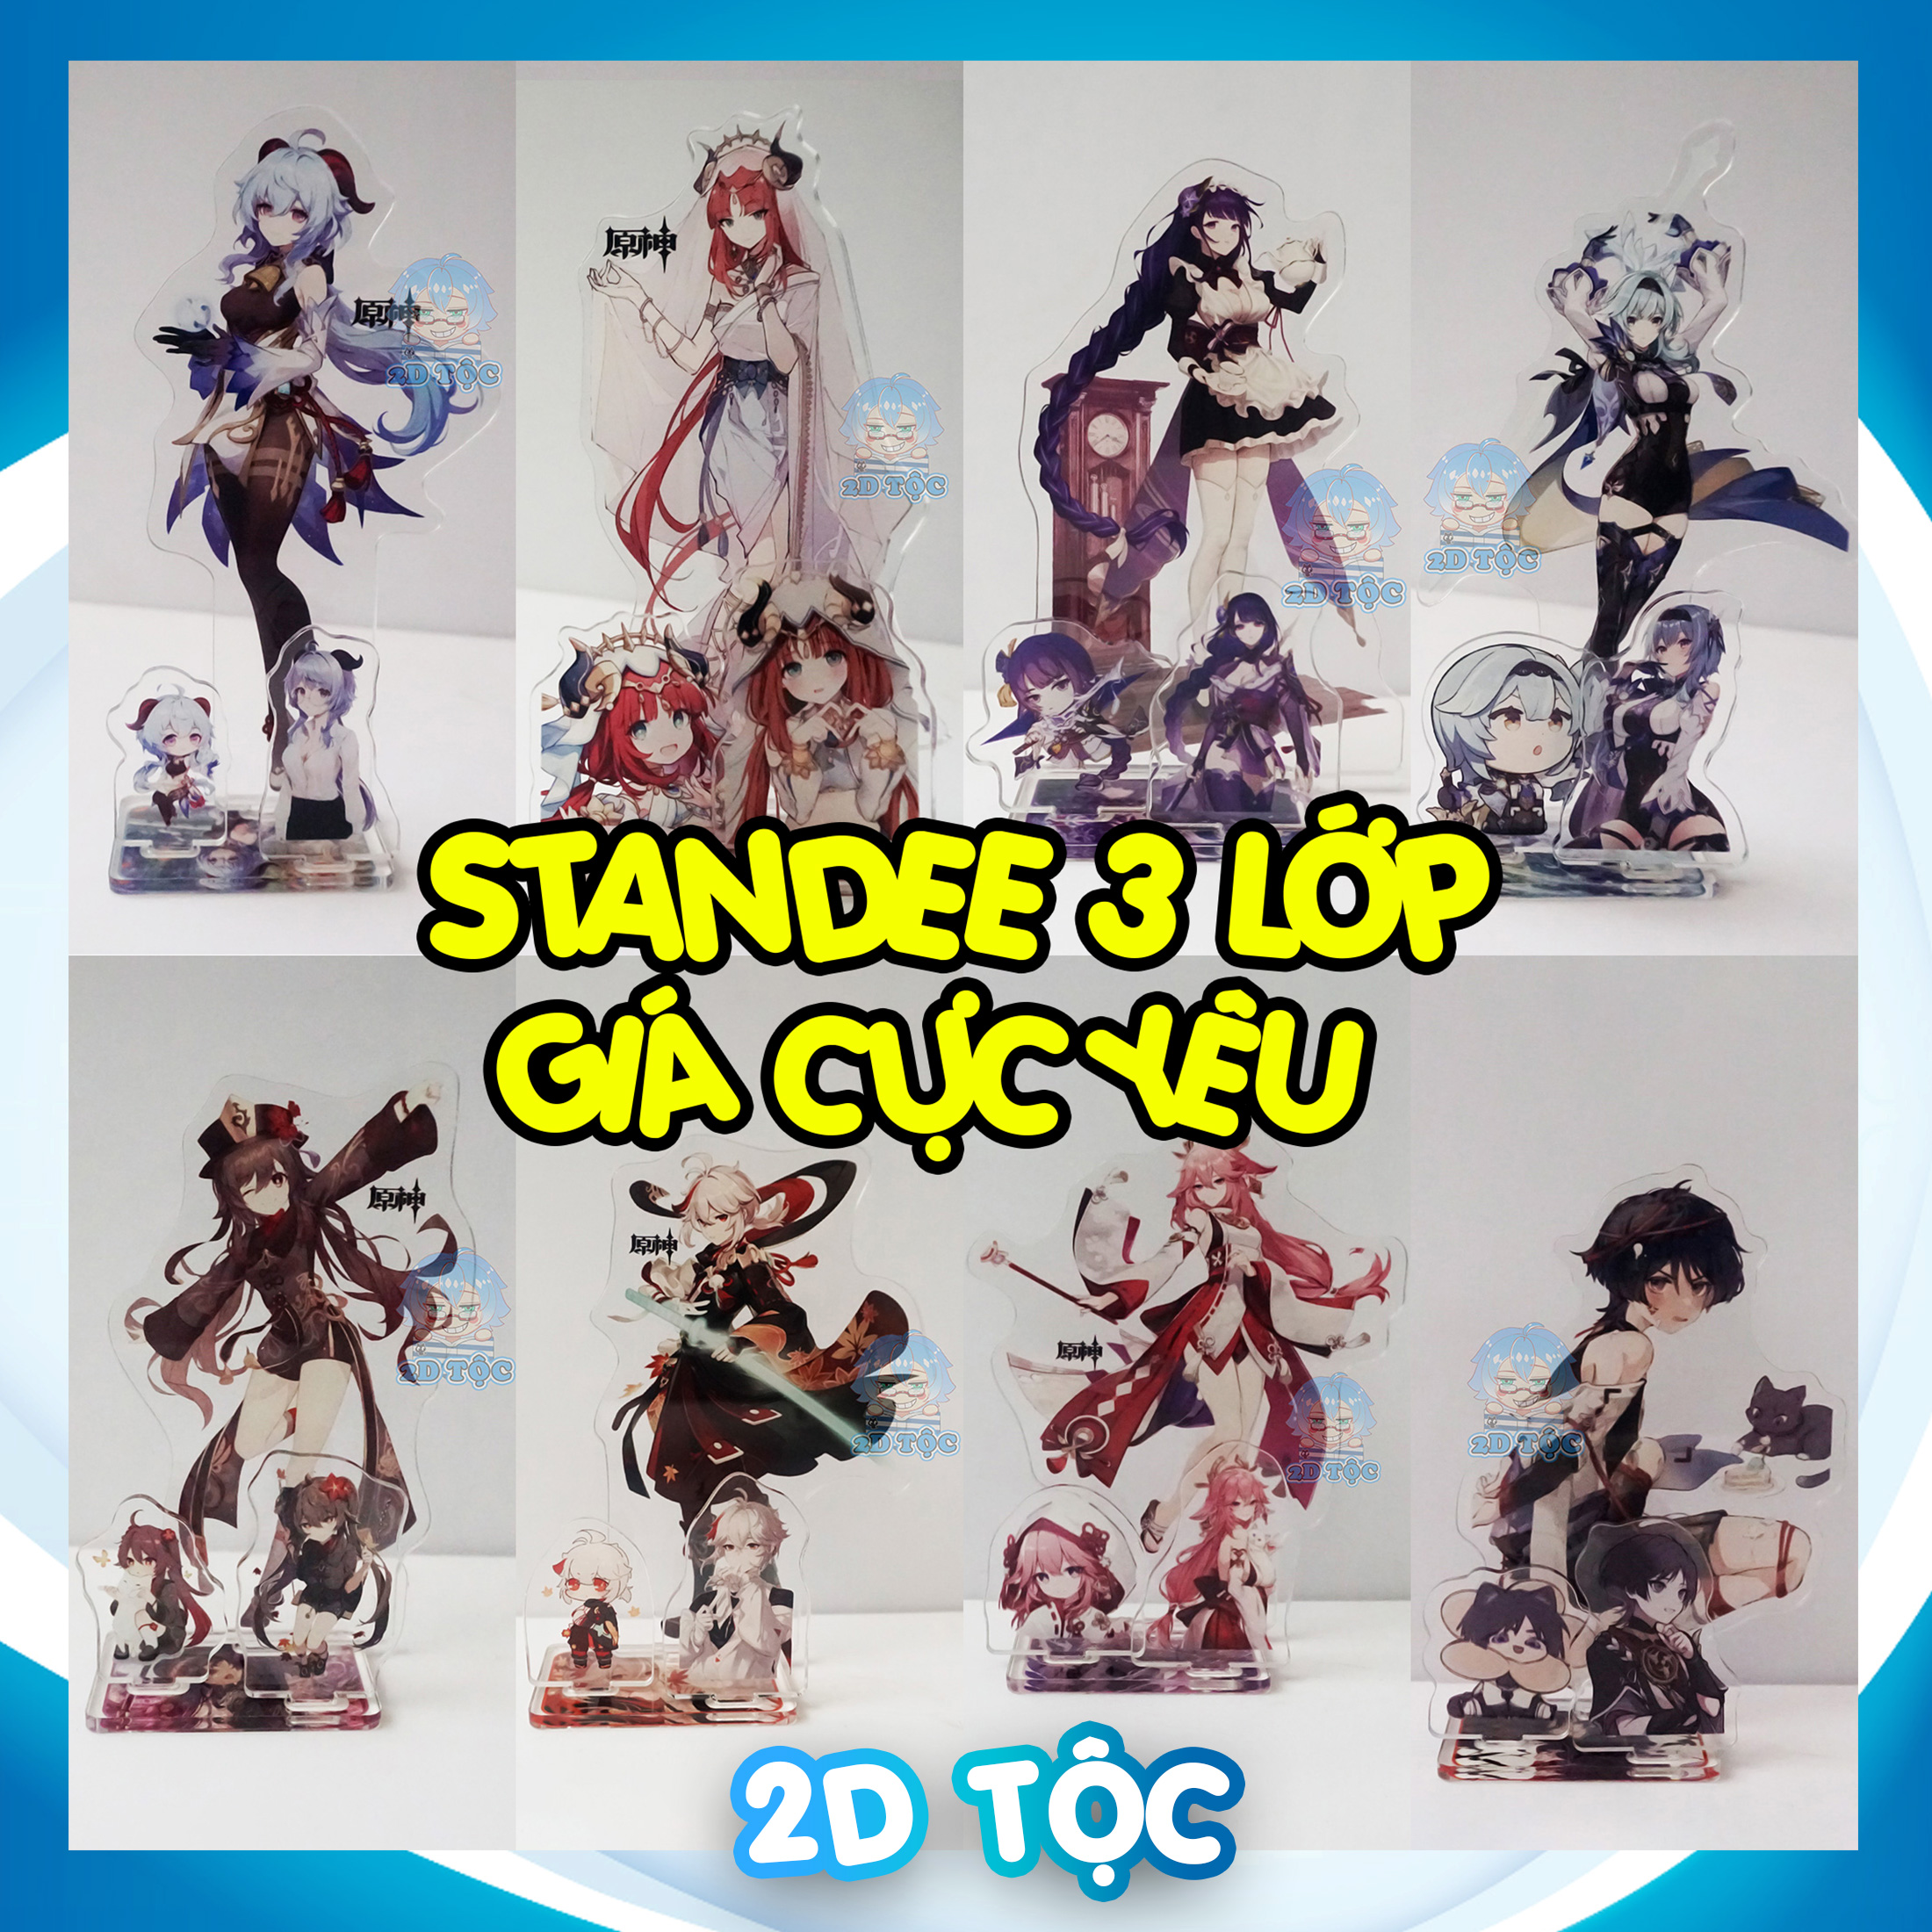 Mô hình Standee Mica Acrylic 3 lớp Game Genshin Impact Tượng Mica Anime by